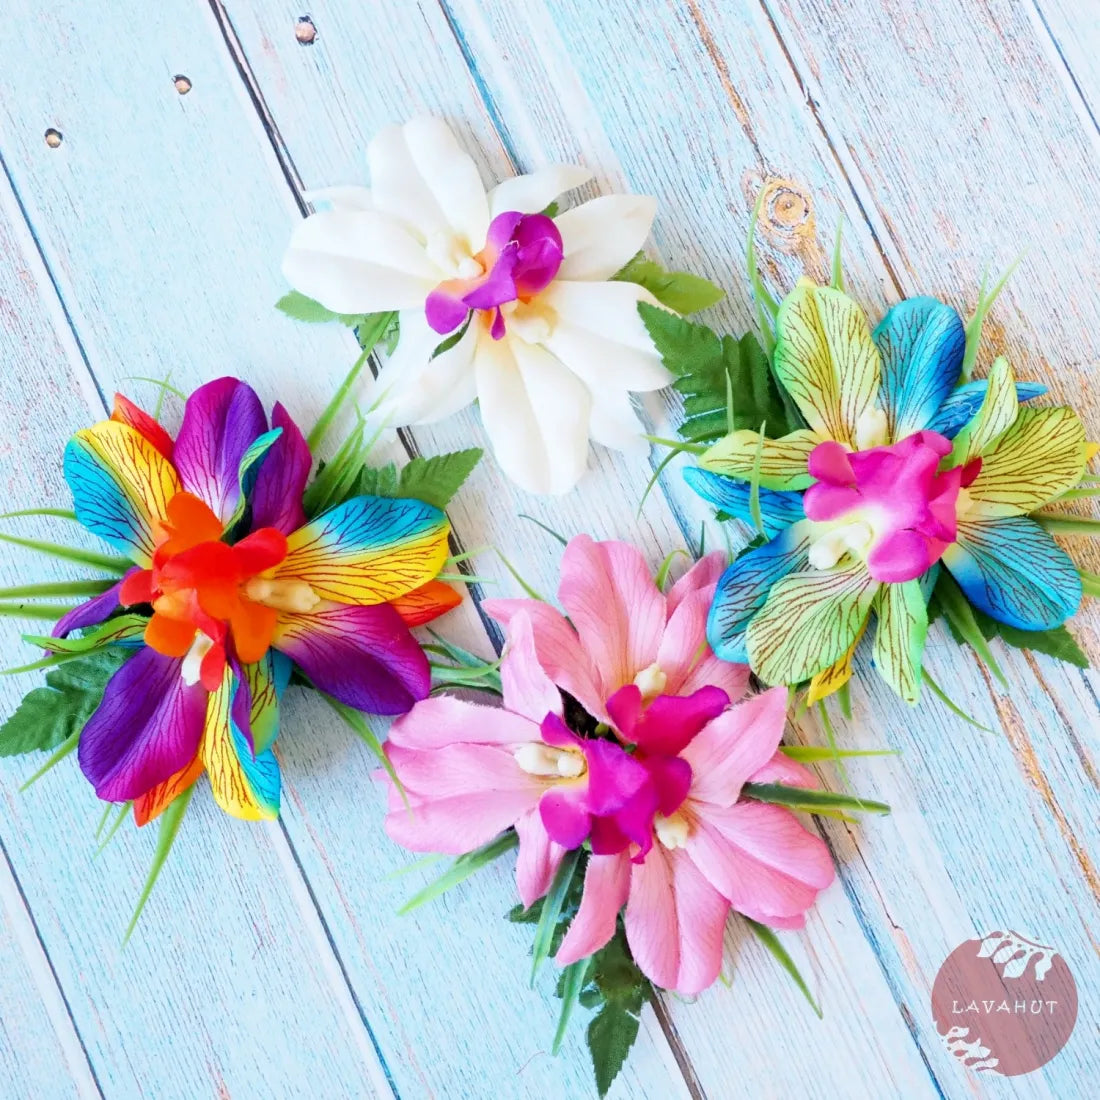 Kula Rainbow Hawaiian Flower Hair Clip - Made In Hawaii